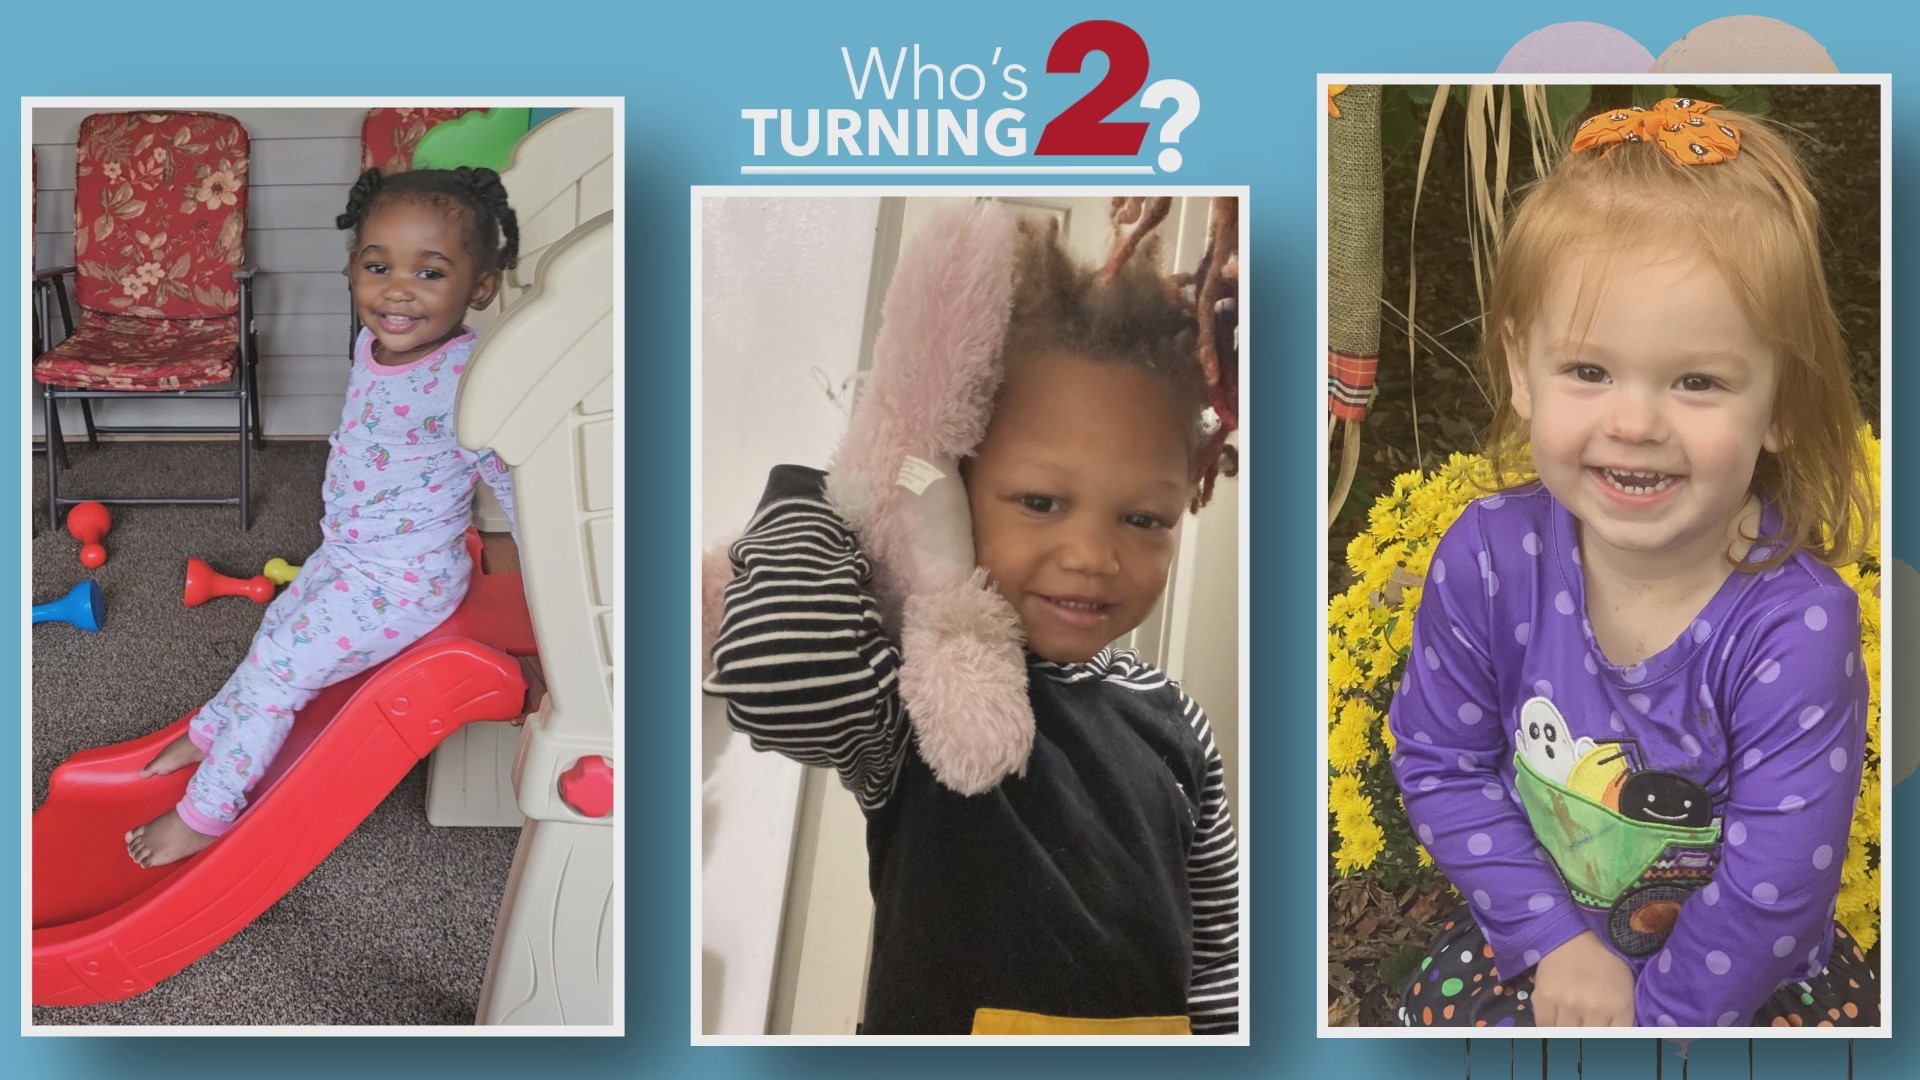 Let’s celebrate some amazing kiddos turning 2!